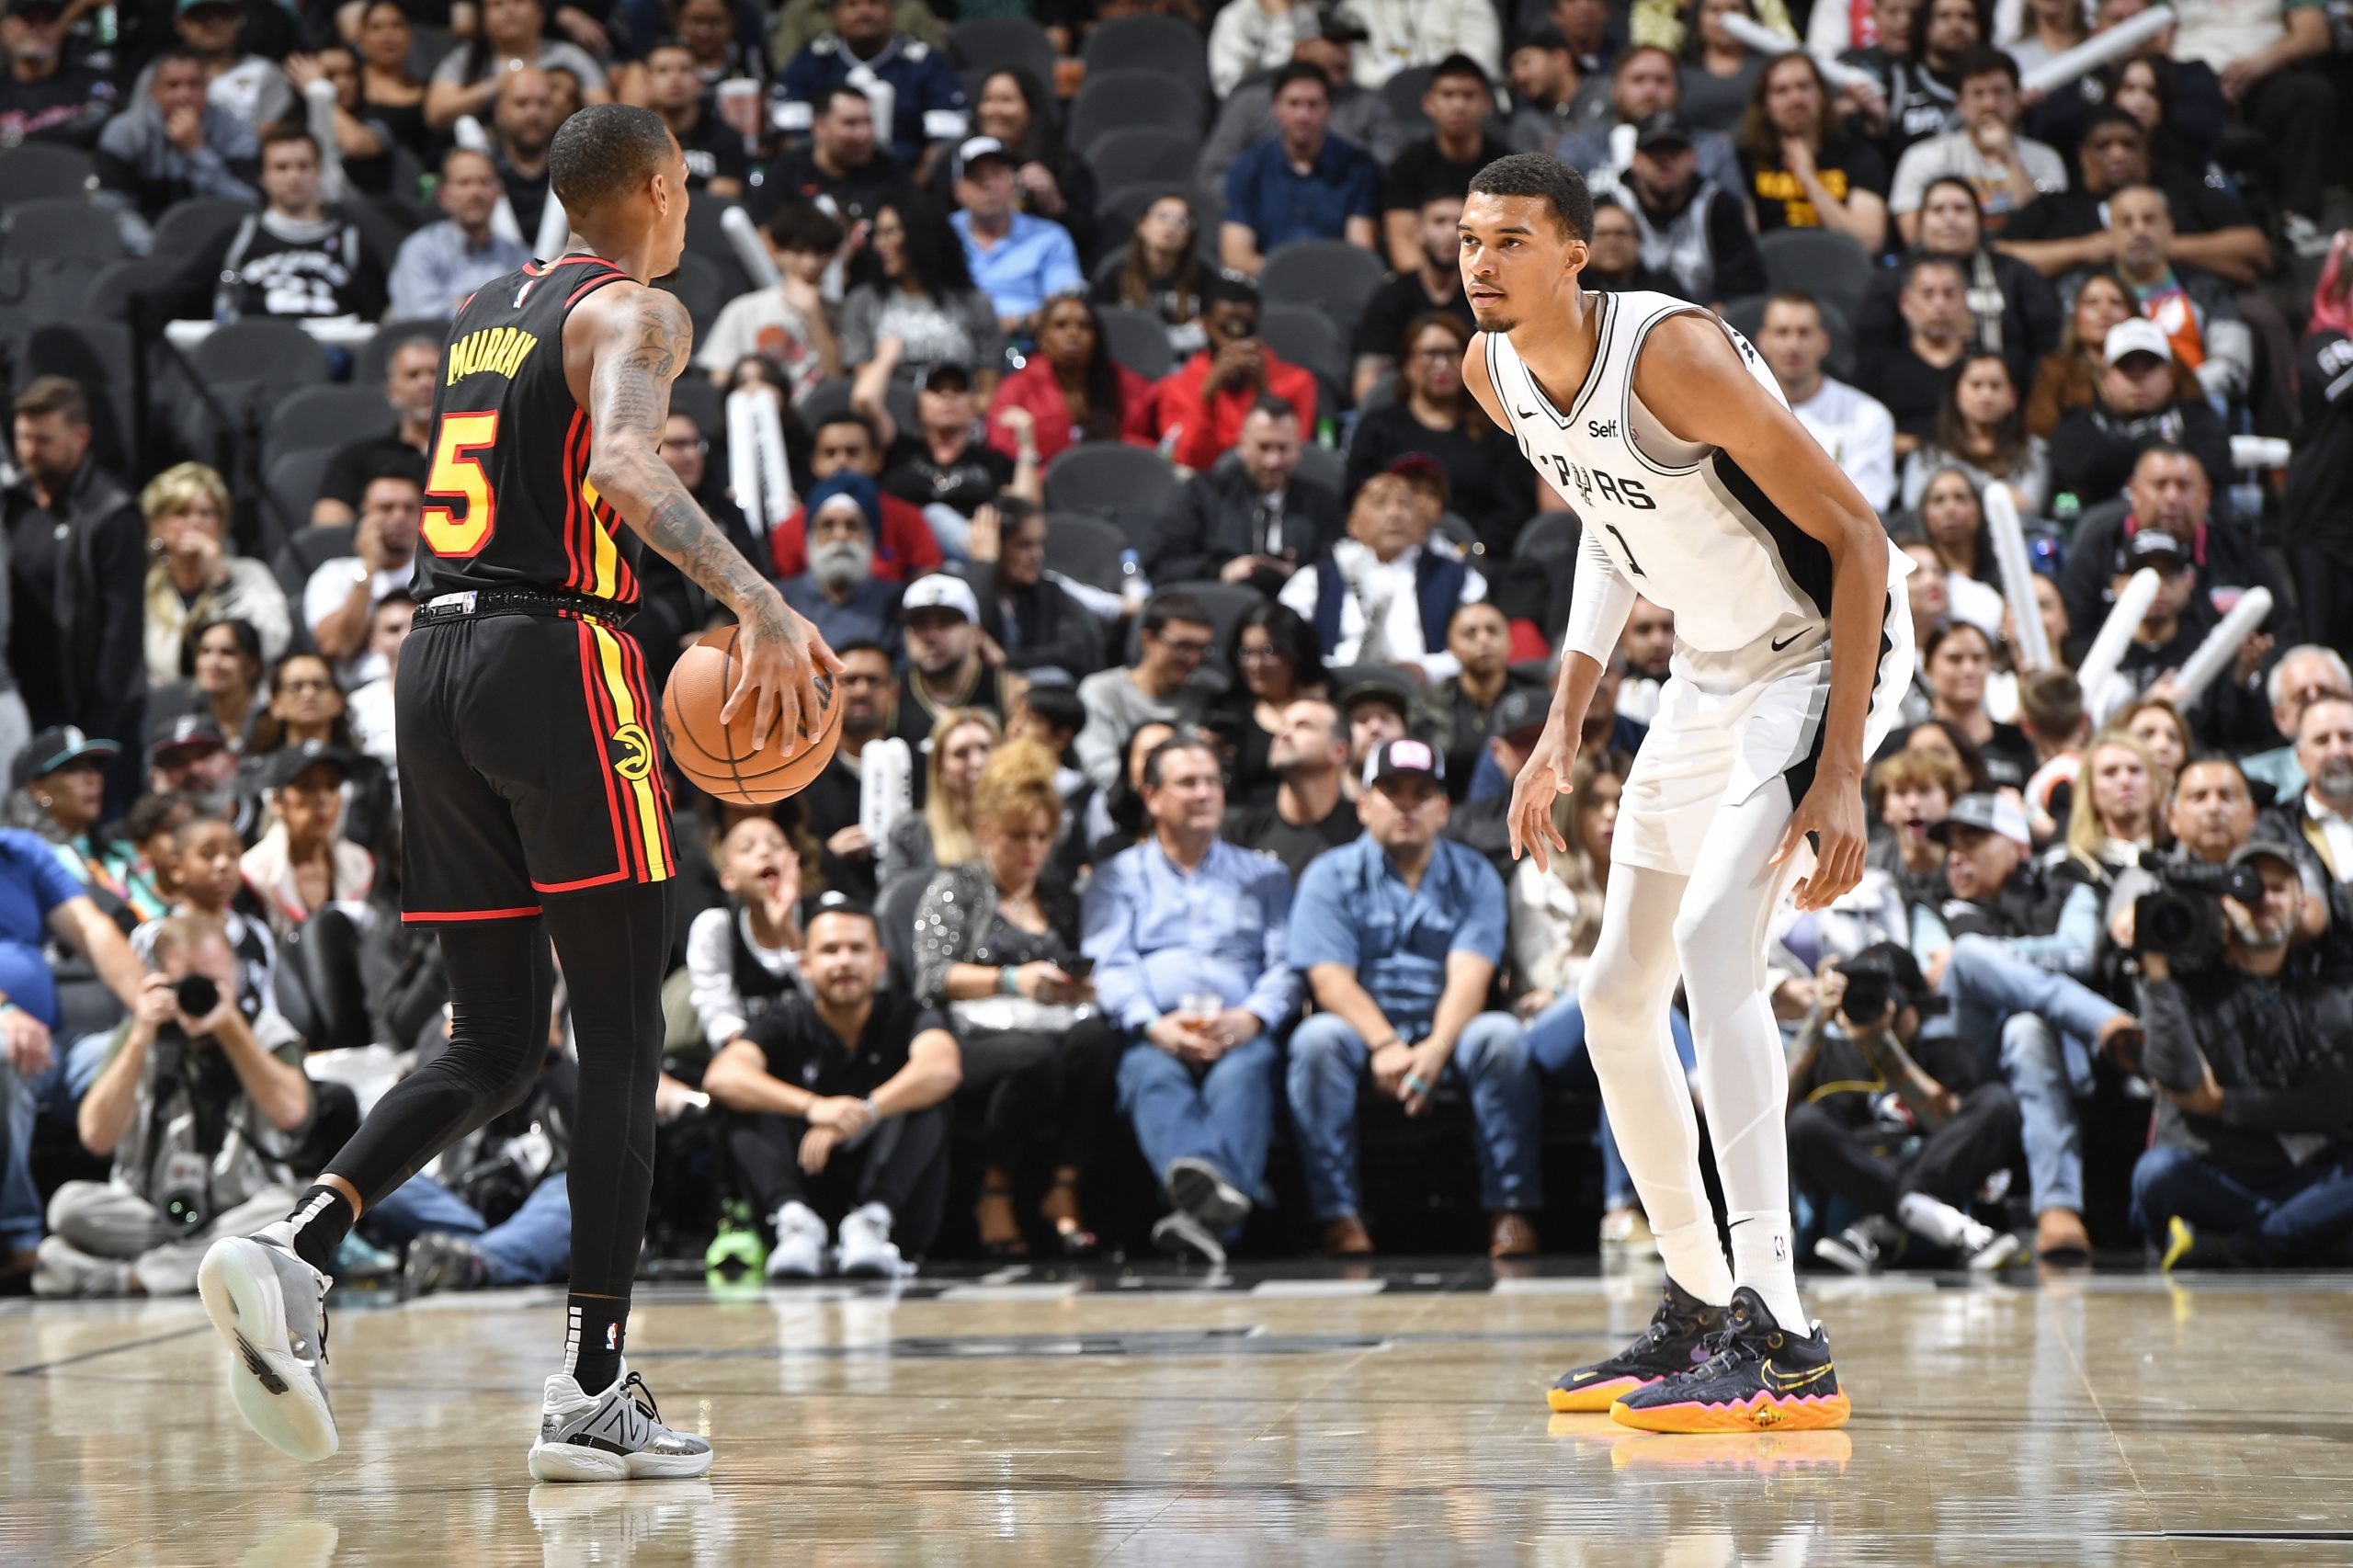 NBA News: Kibice wygwizdali Warriors po klęsce. Co na to Curry i Thompson?